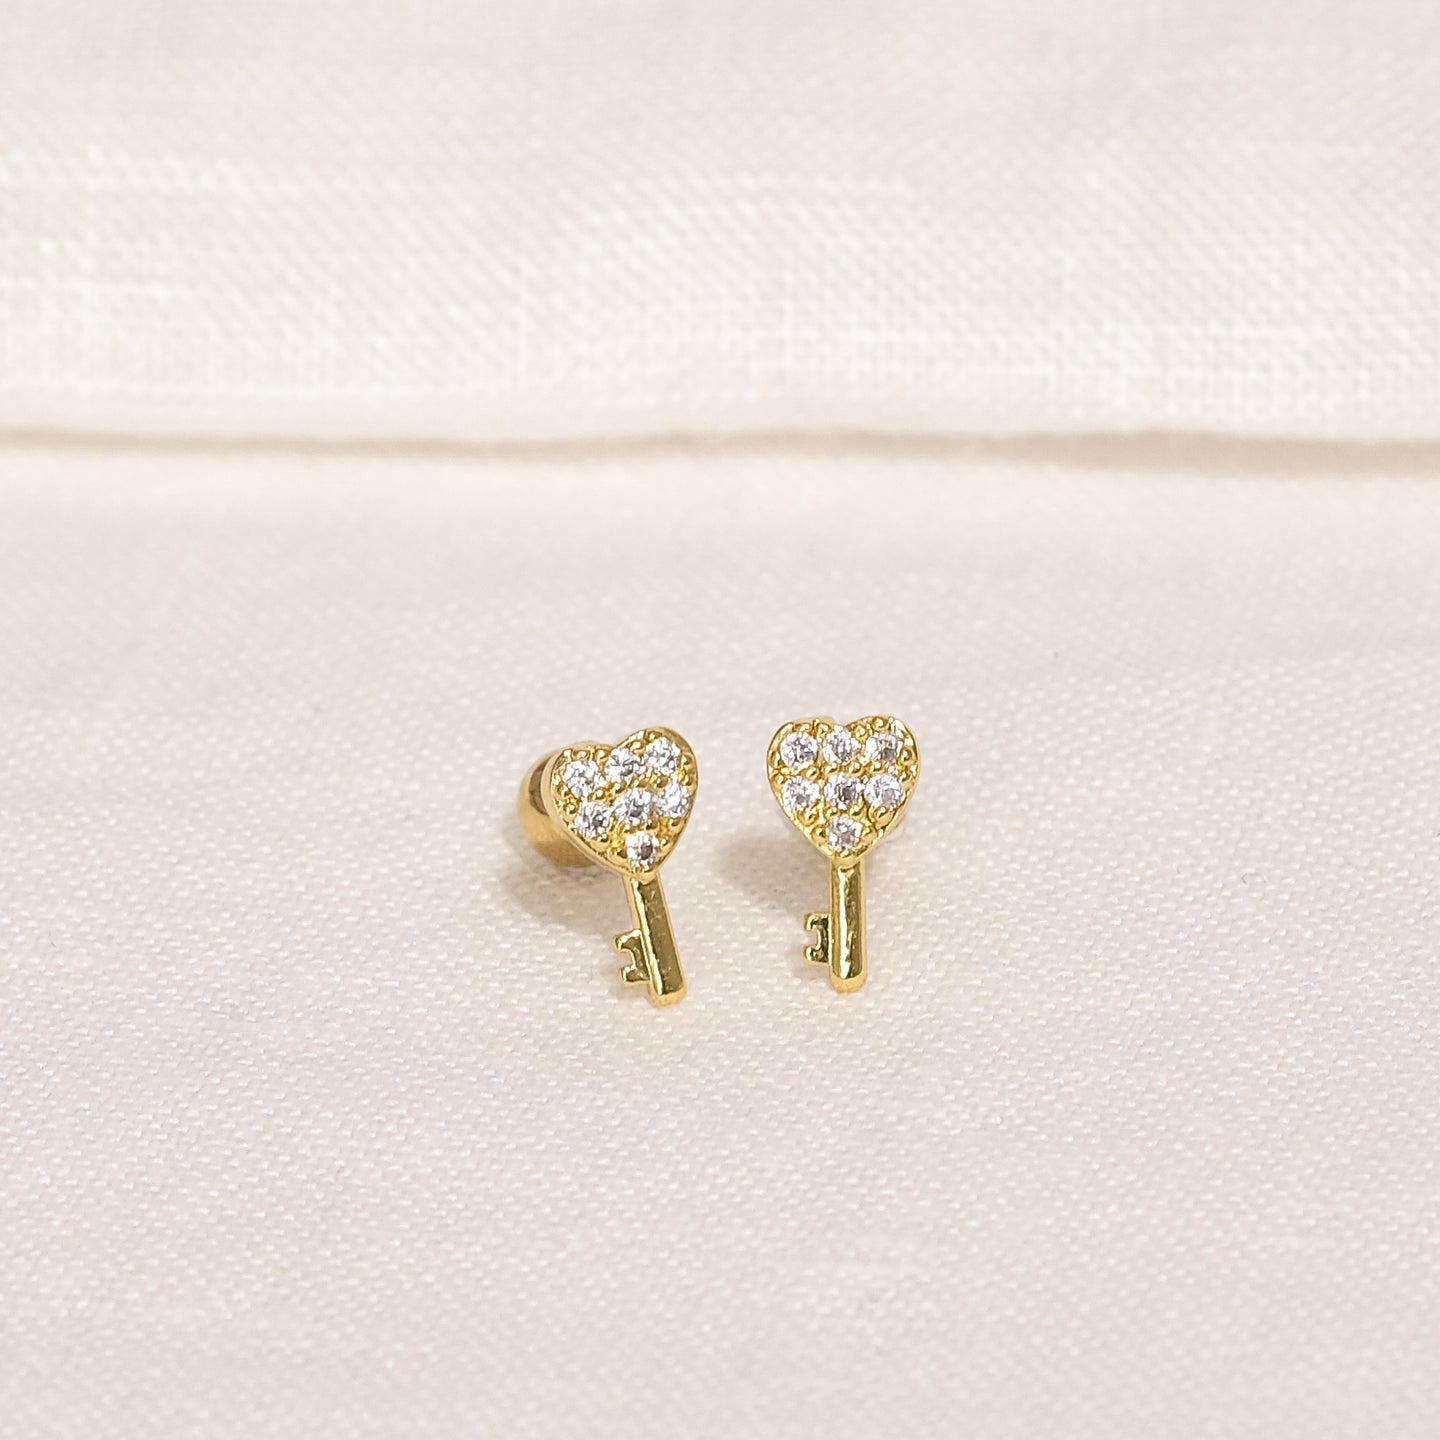 products/kaleb-cz-stud-earrings-18k-gold-stainless-steel-2.jpg